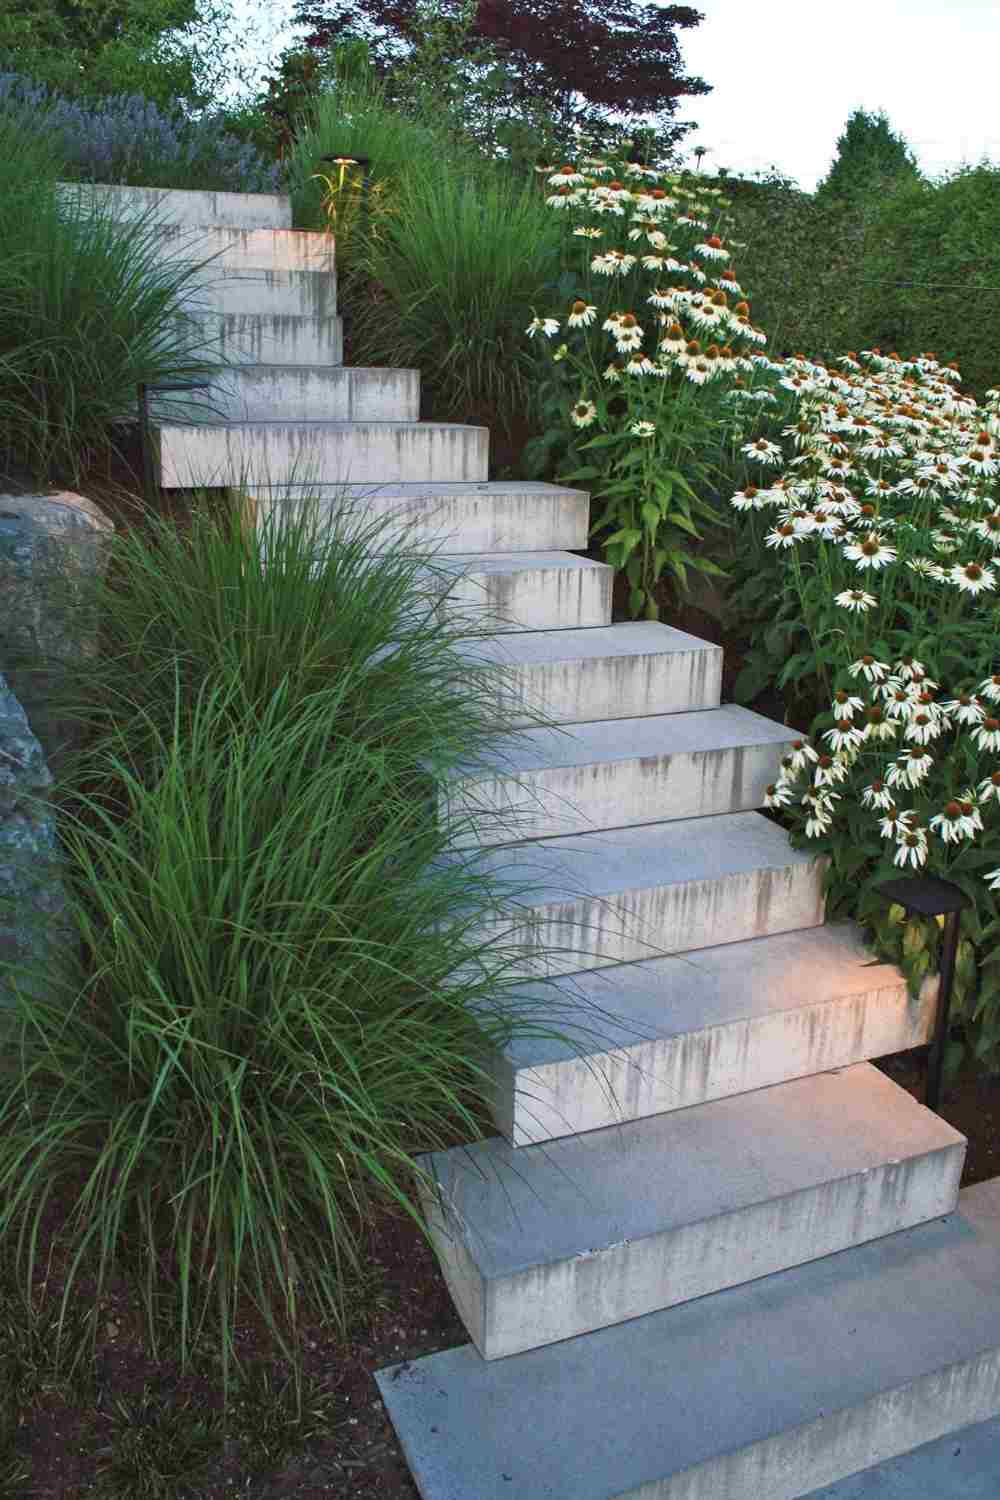 kreative hangbefestigung aus beton treppen und grünen pflanzen mit blüten für garten